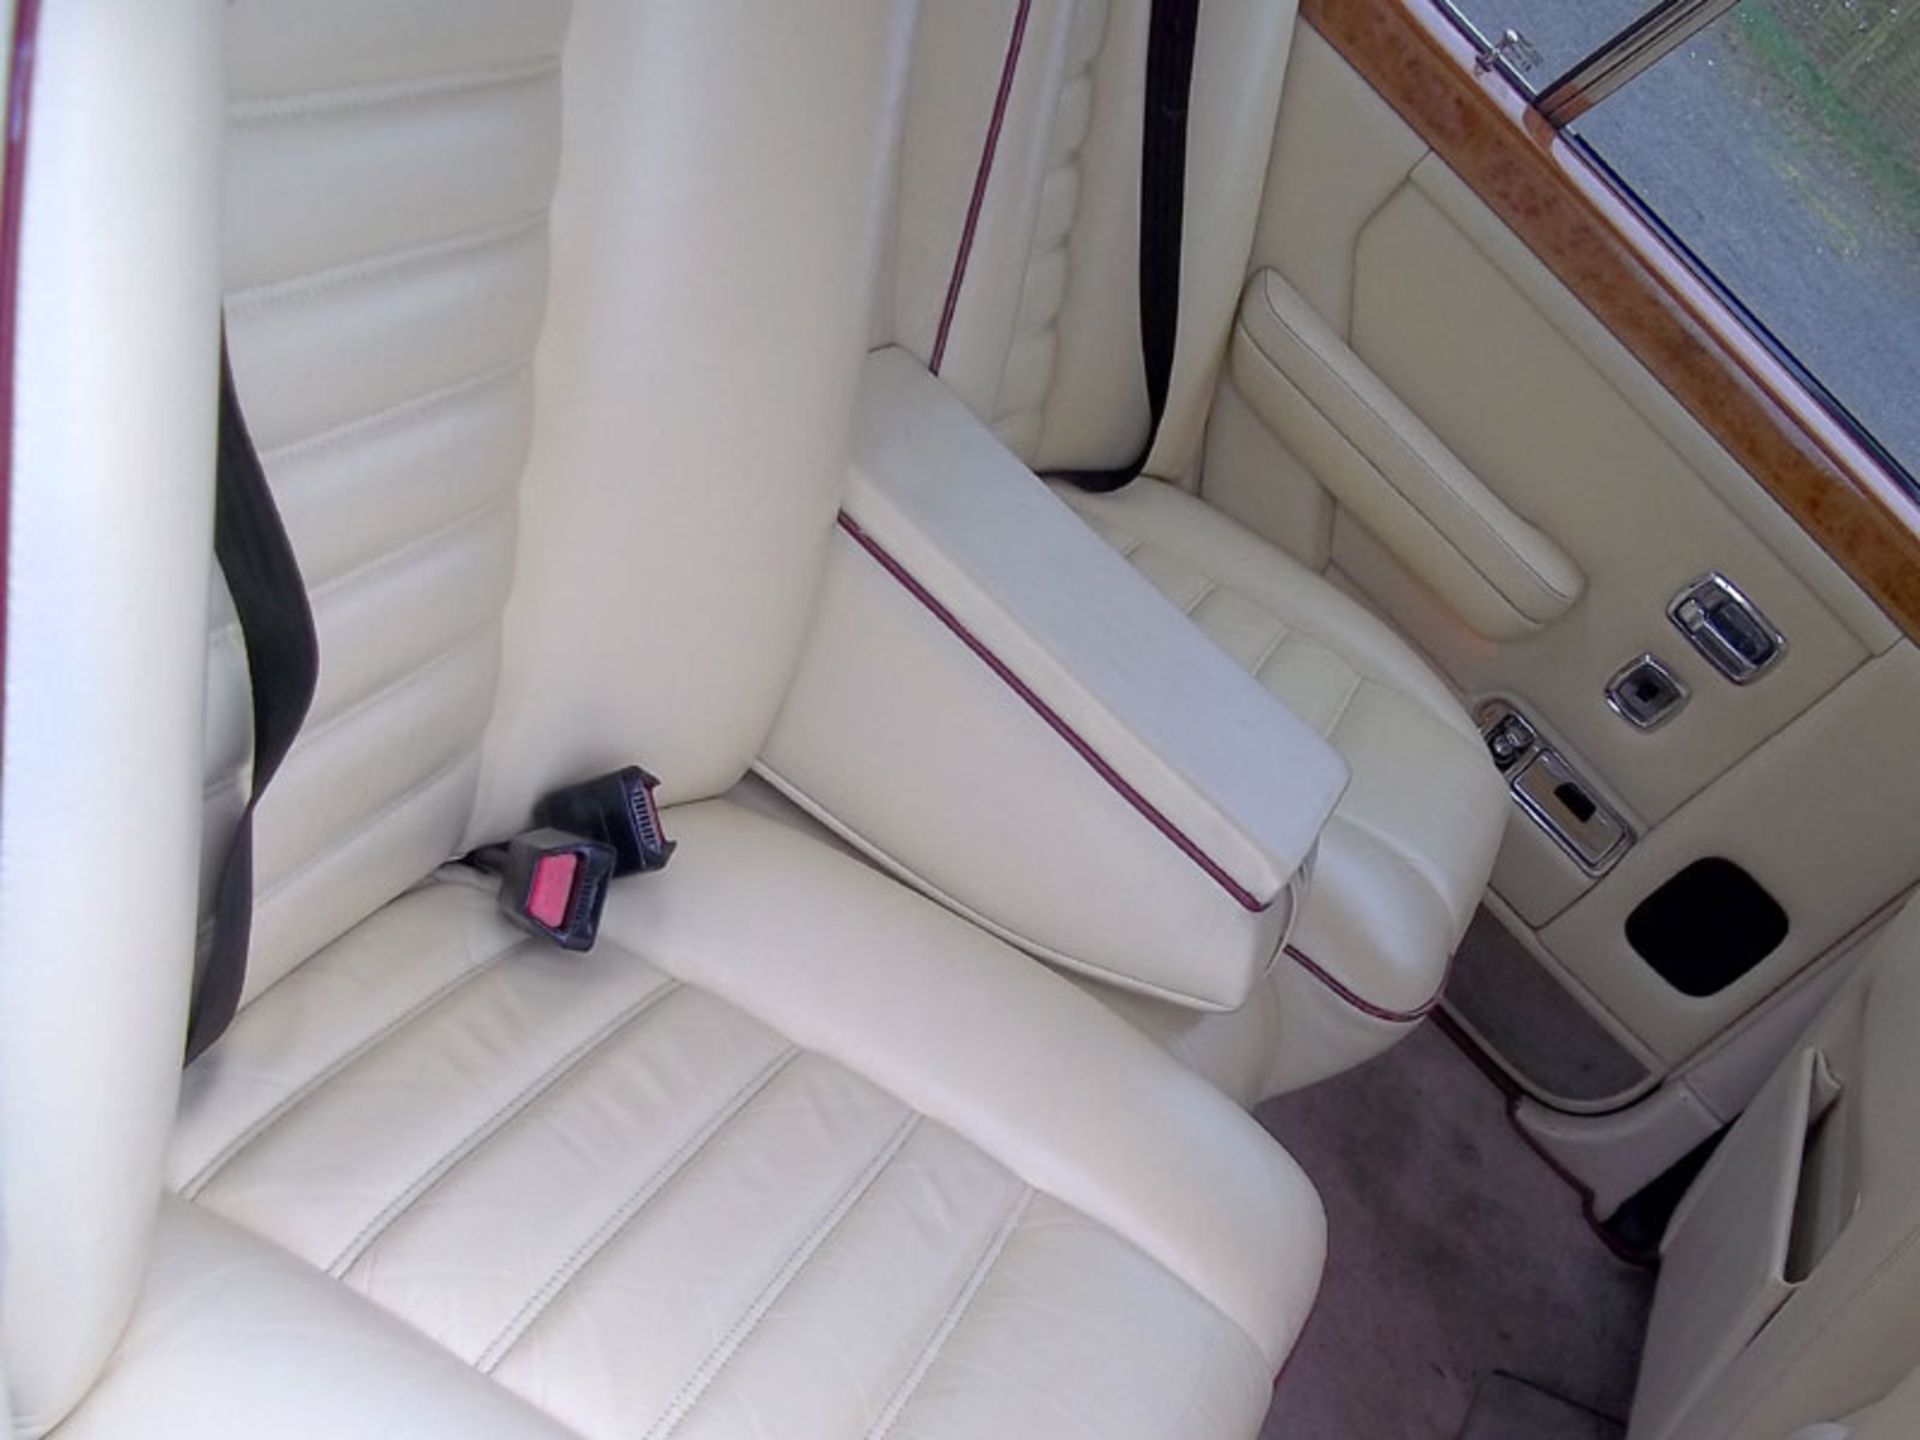 1989 Bentley Turbo R - Image 5 of 5